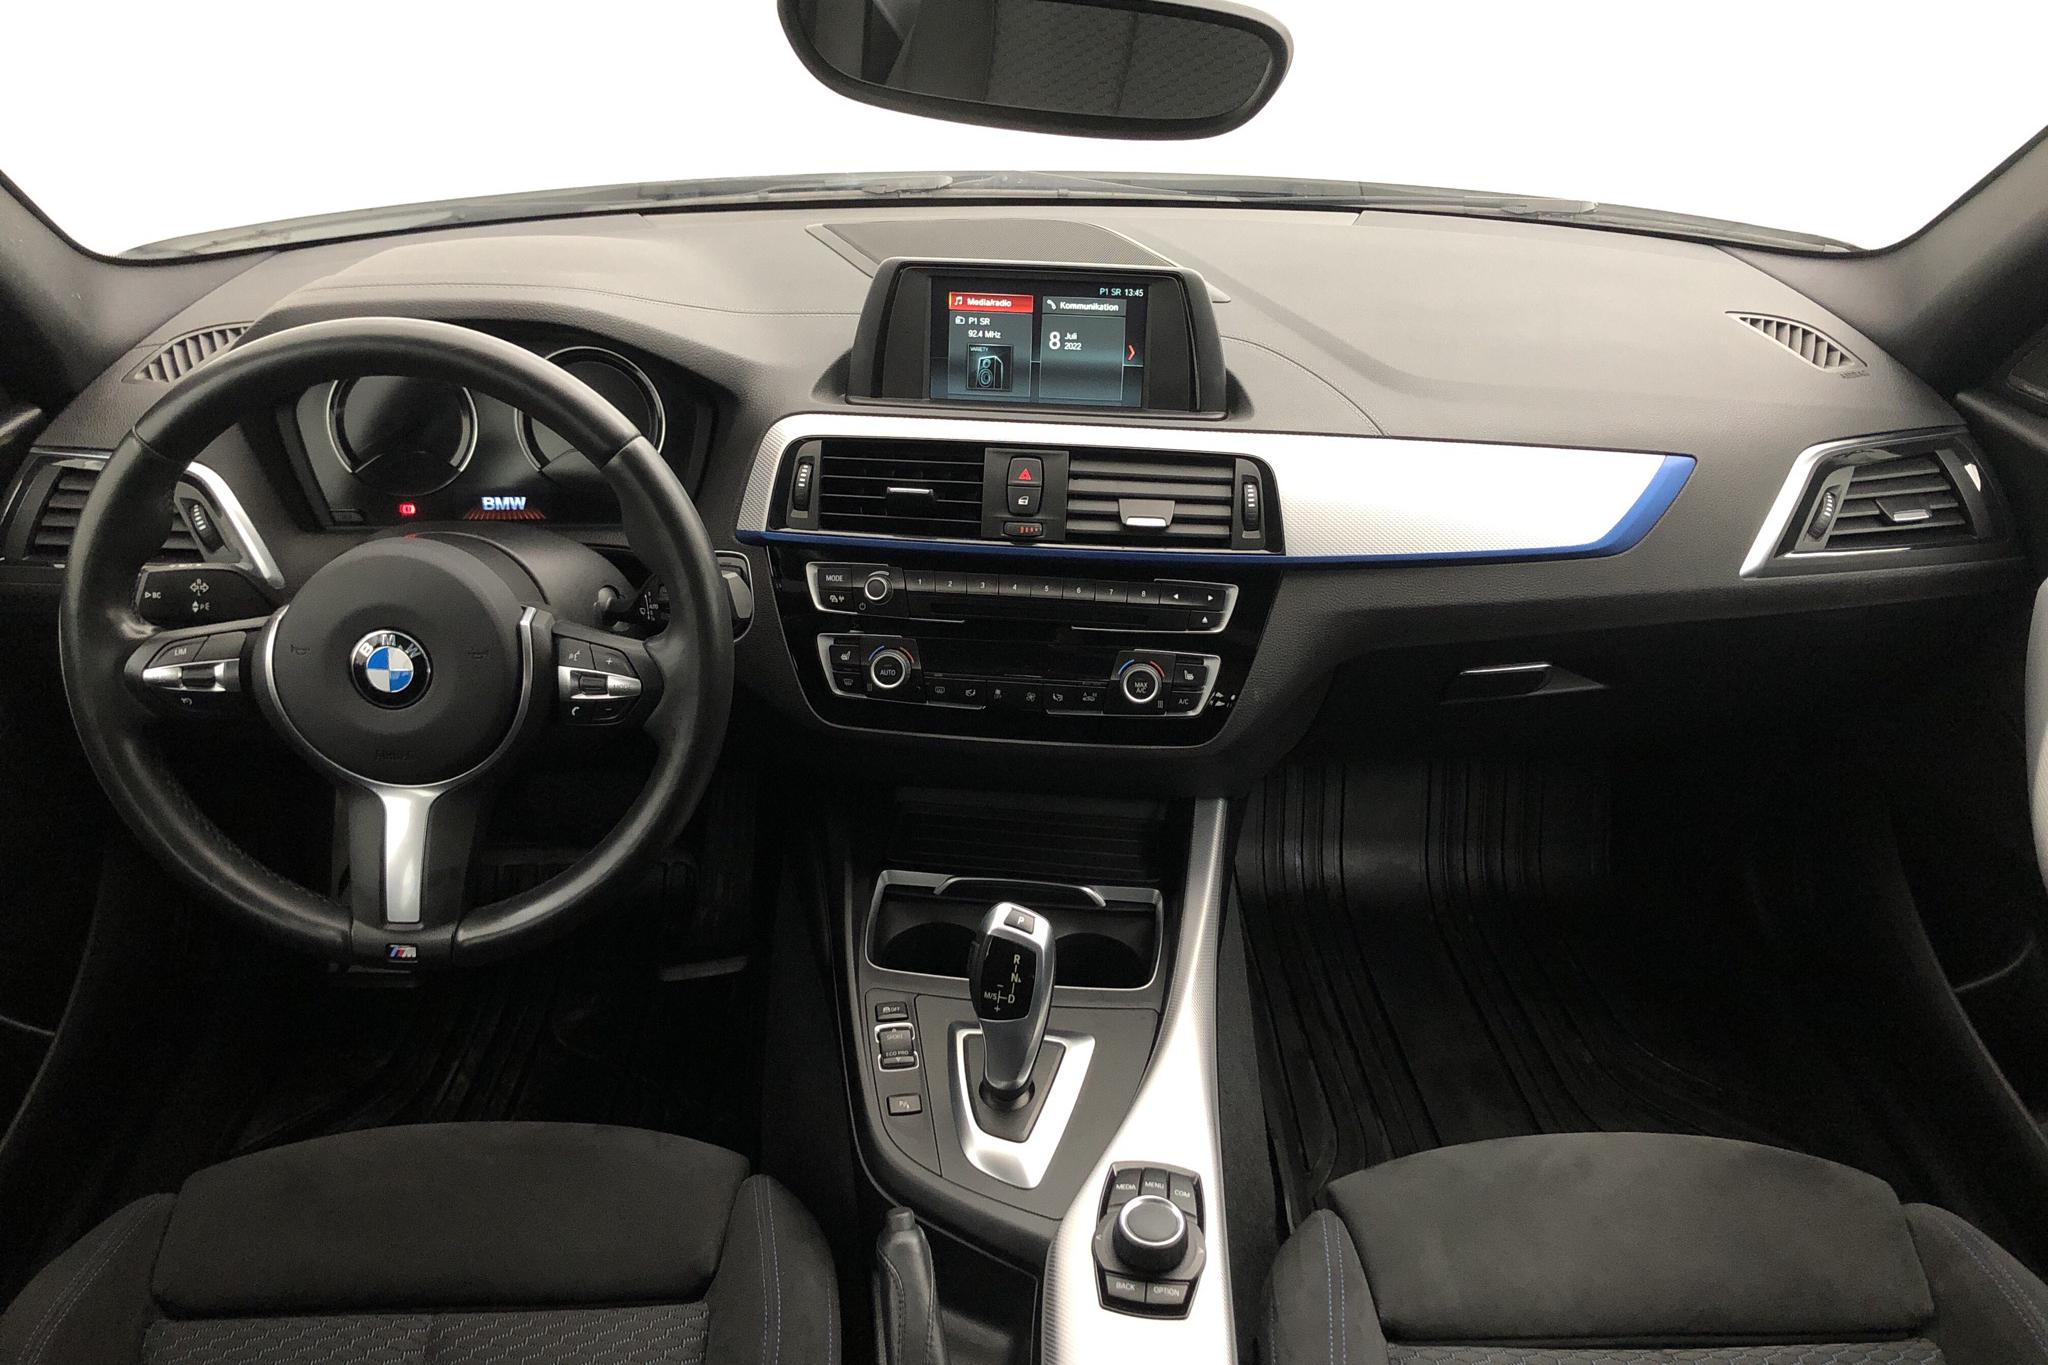 BMW 118i 5dr, F20 (136hk) - 79 370 km - Automatic - white - 2018